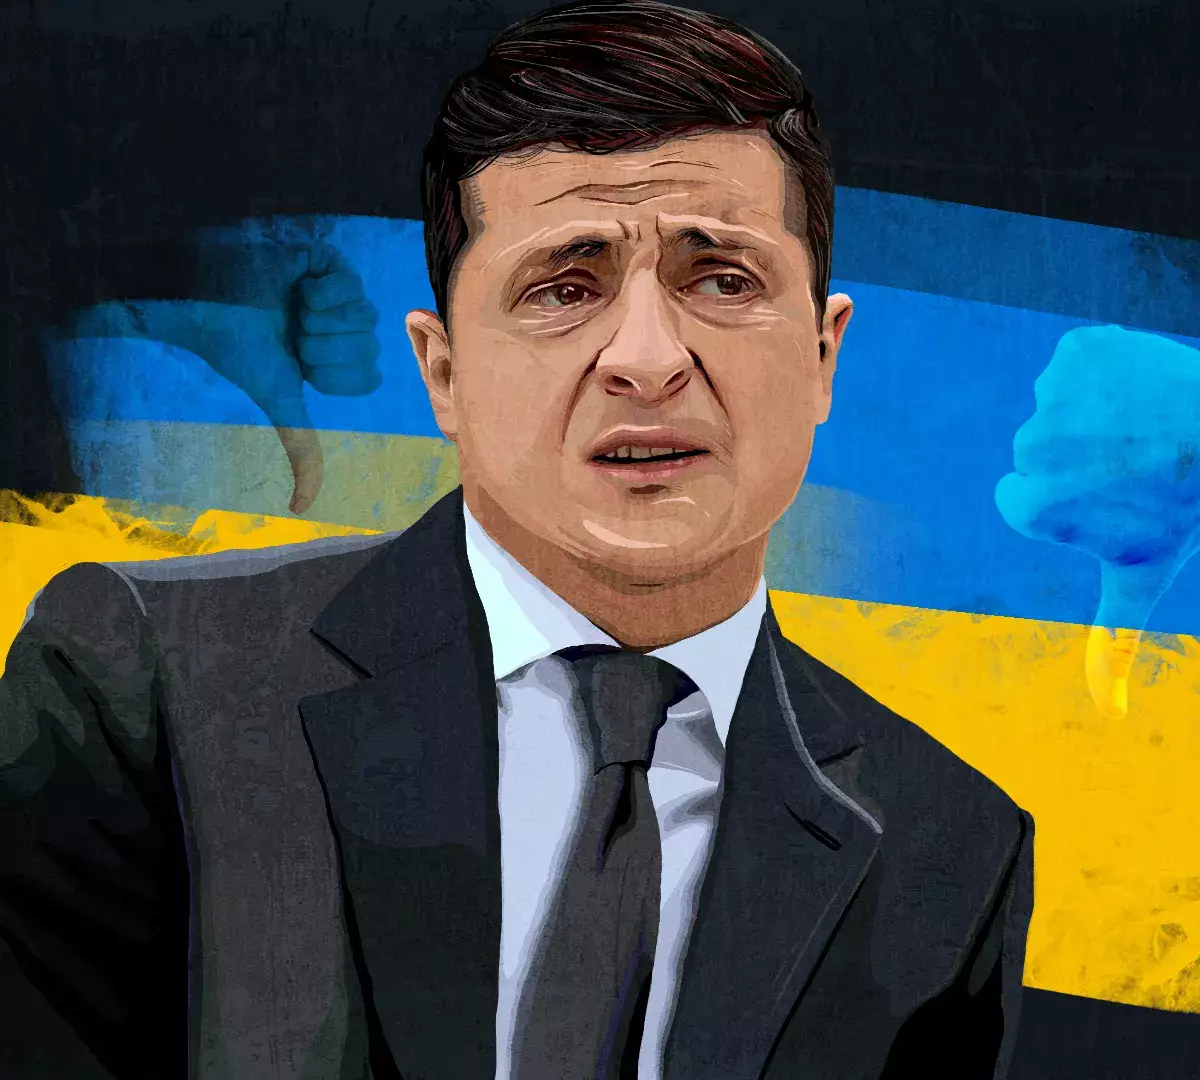 Запад готовит постепенный слив киевского режима